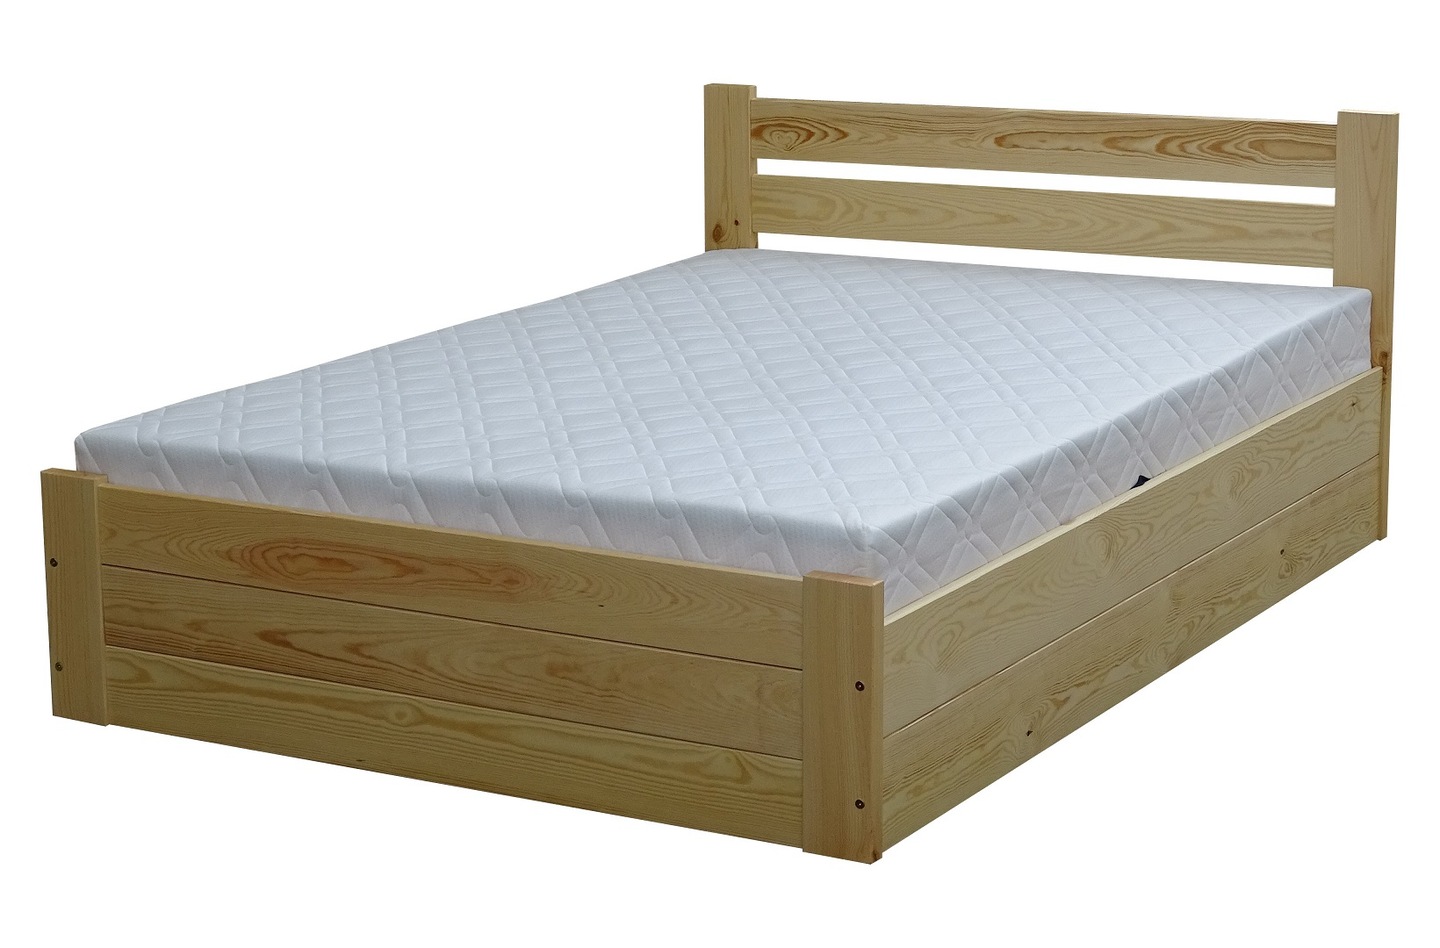 Двуспальная кровать Кантри 140х200